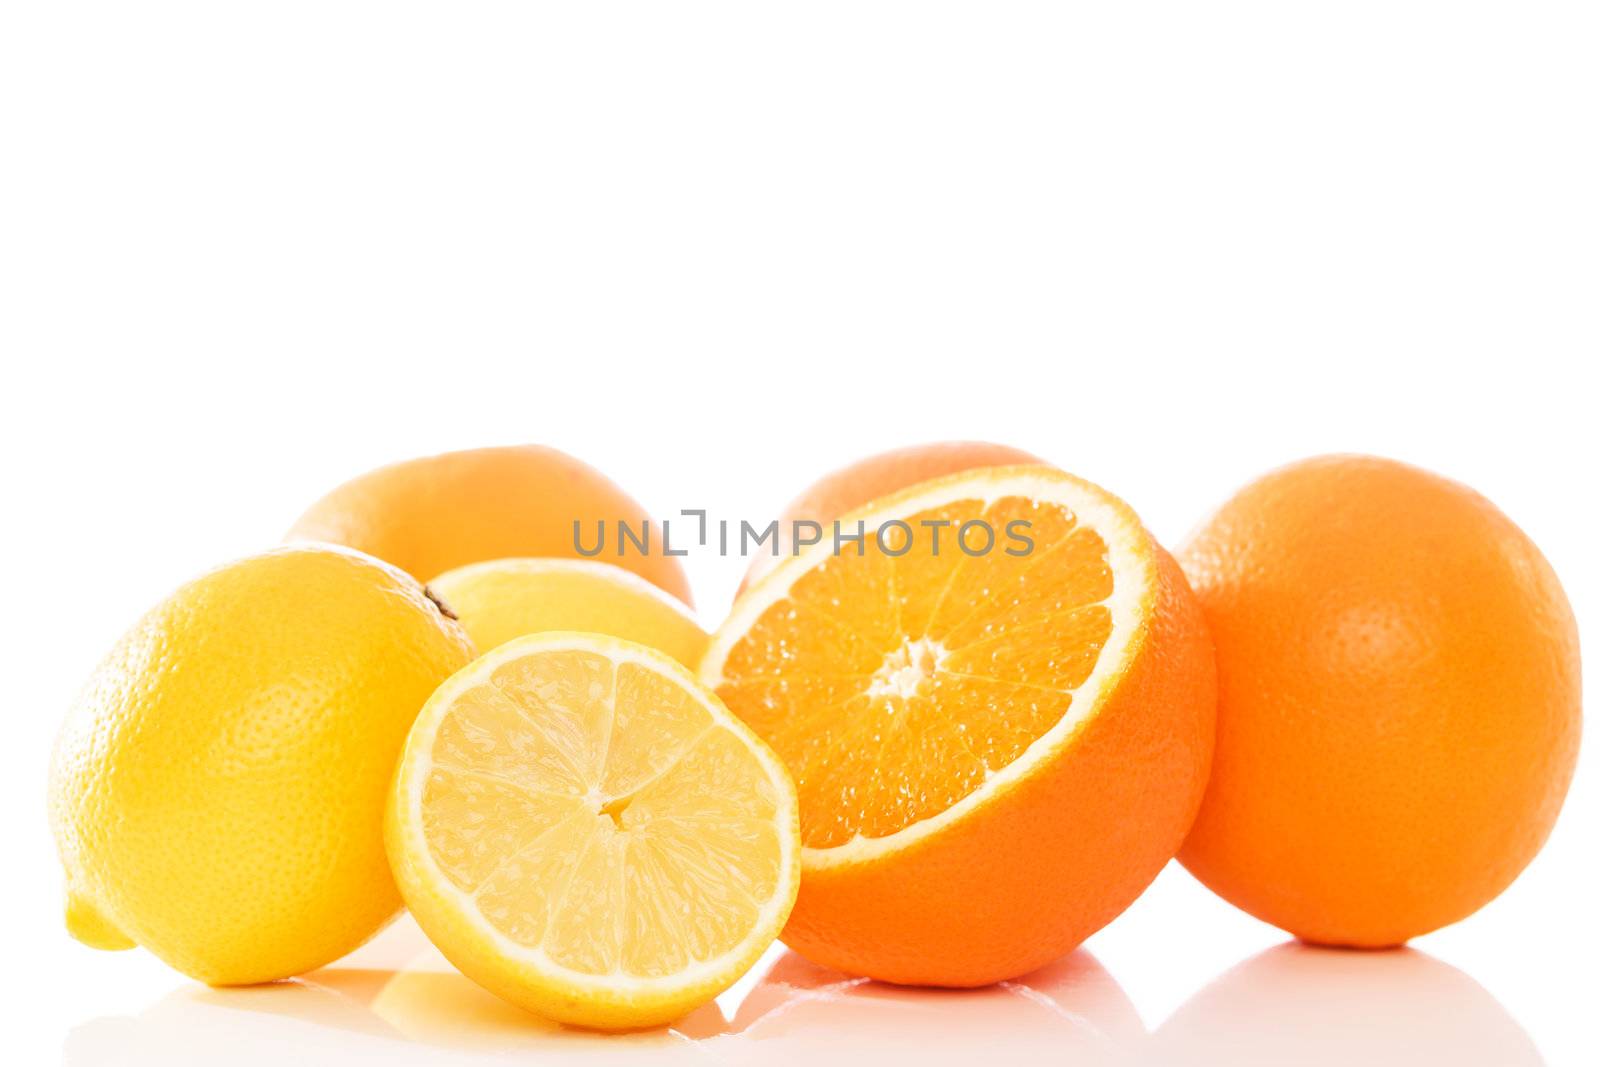 oranges and lemons on white background